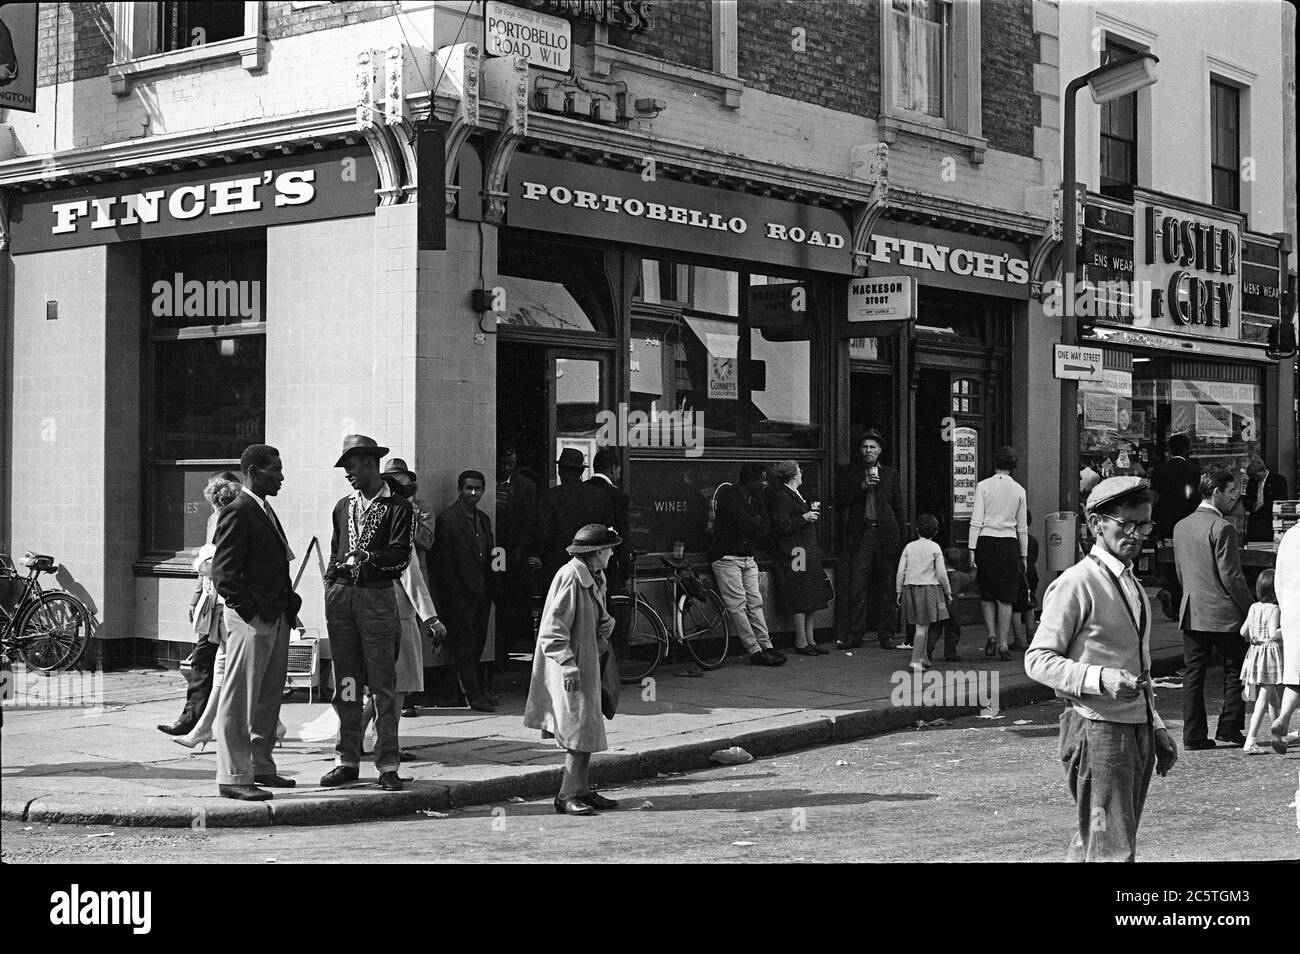 London, Portobello Road 1960 Busy street scene outside Finch's pub Stock Photo